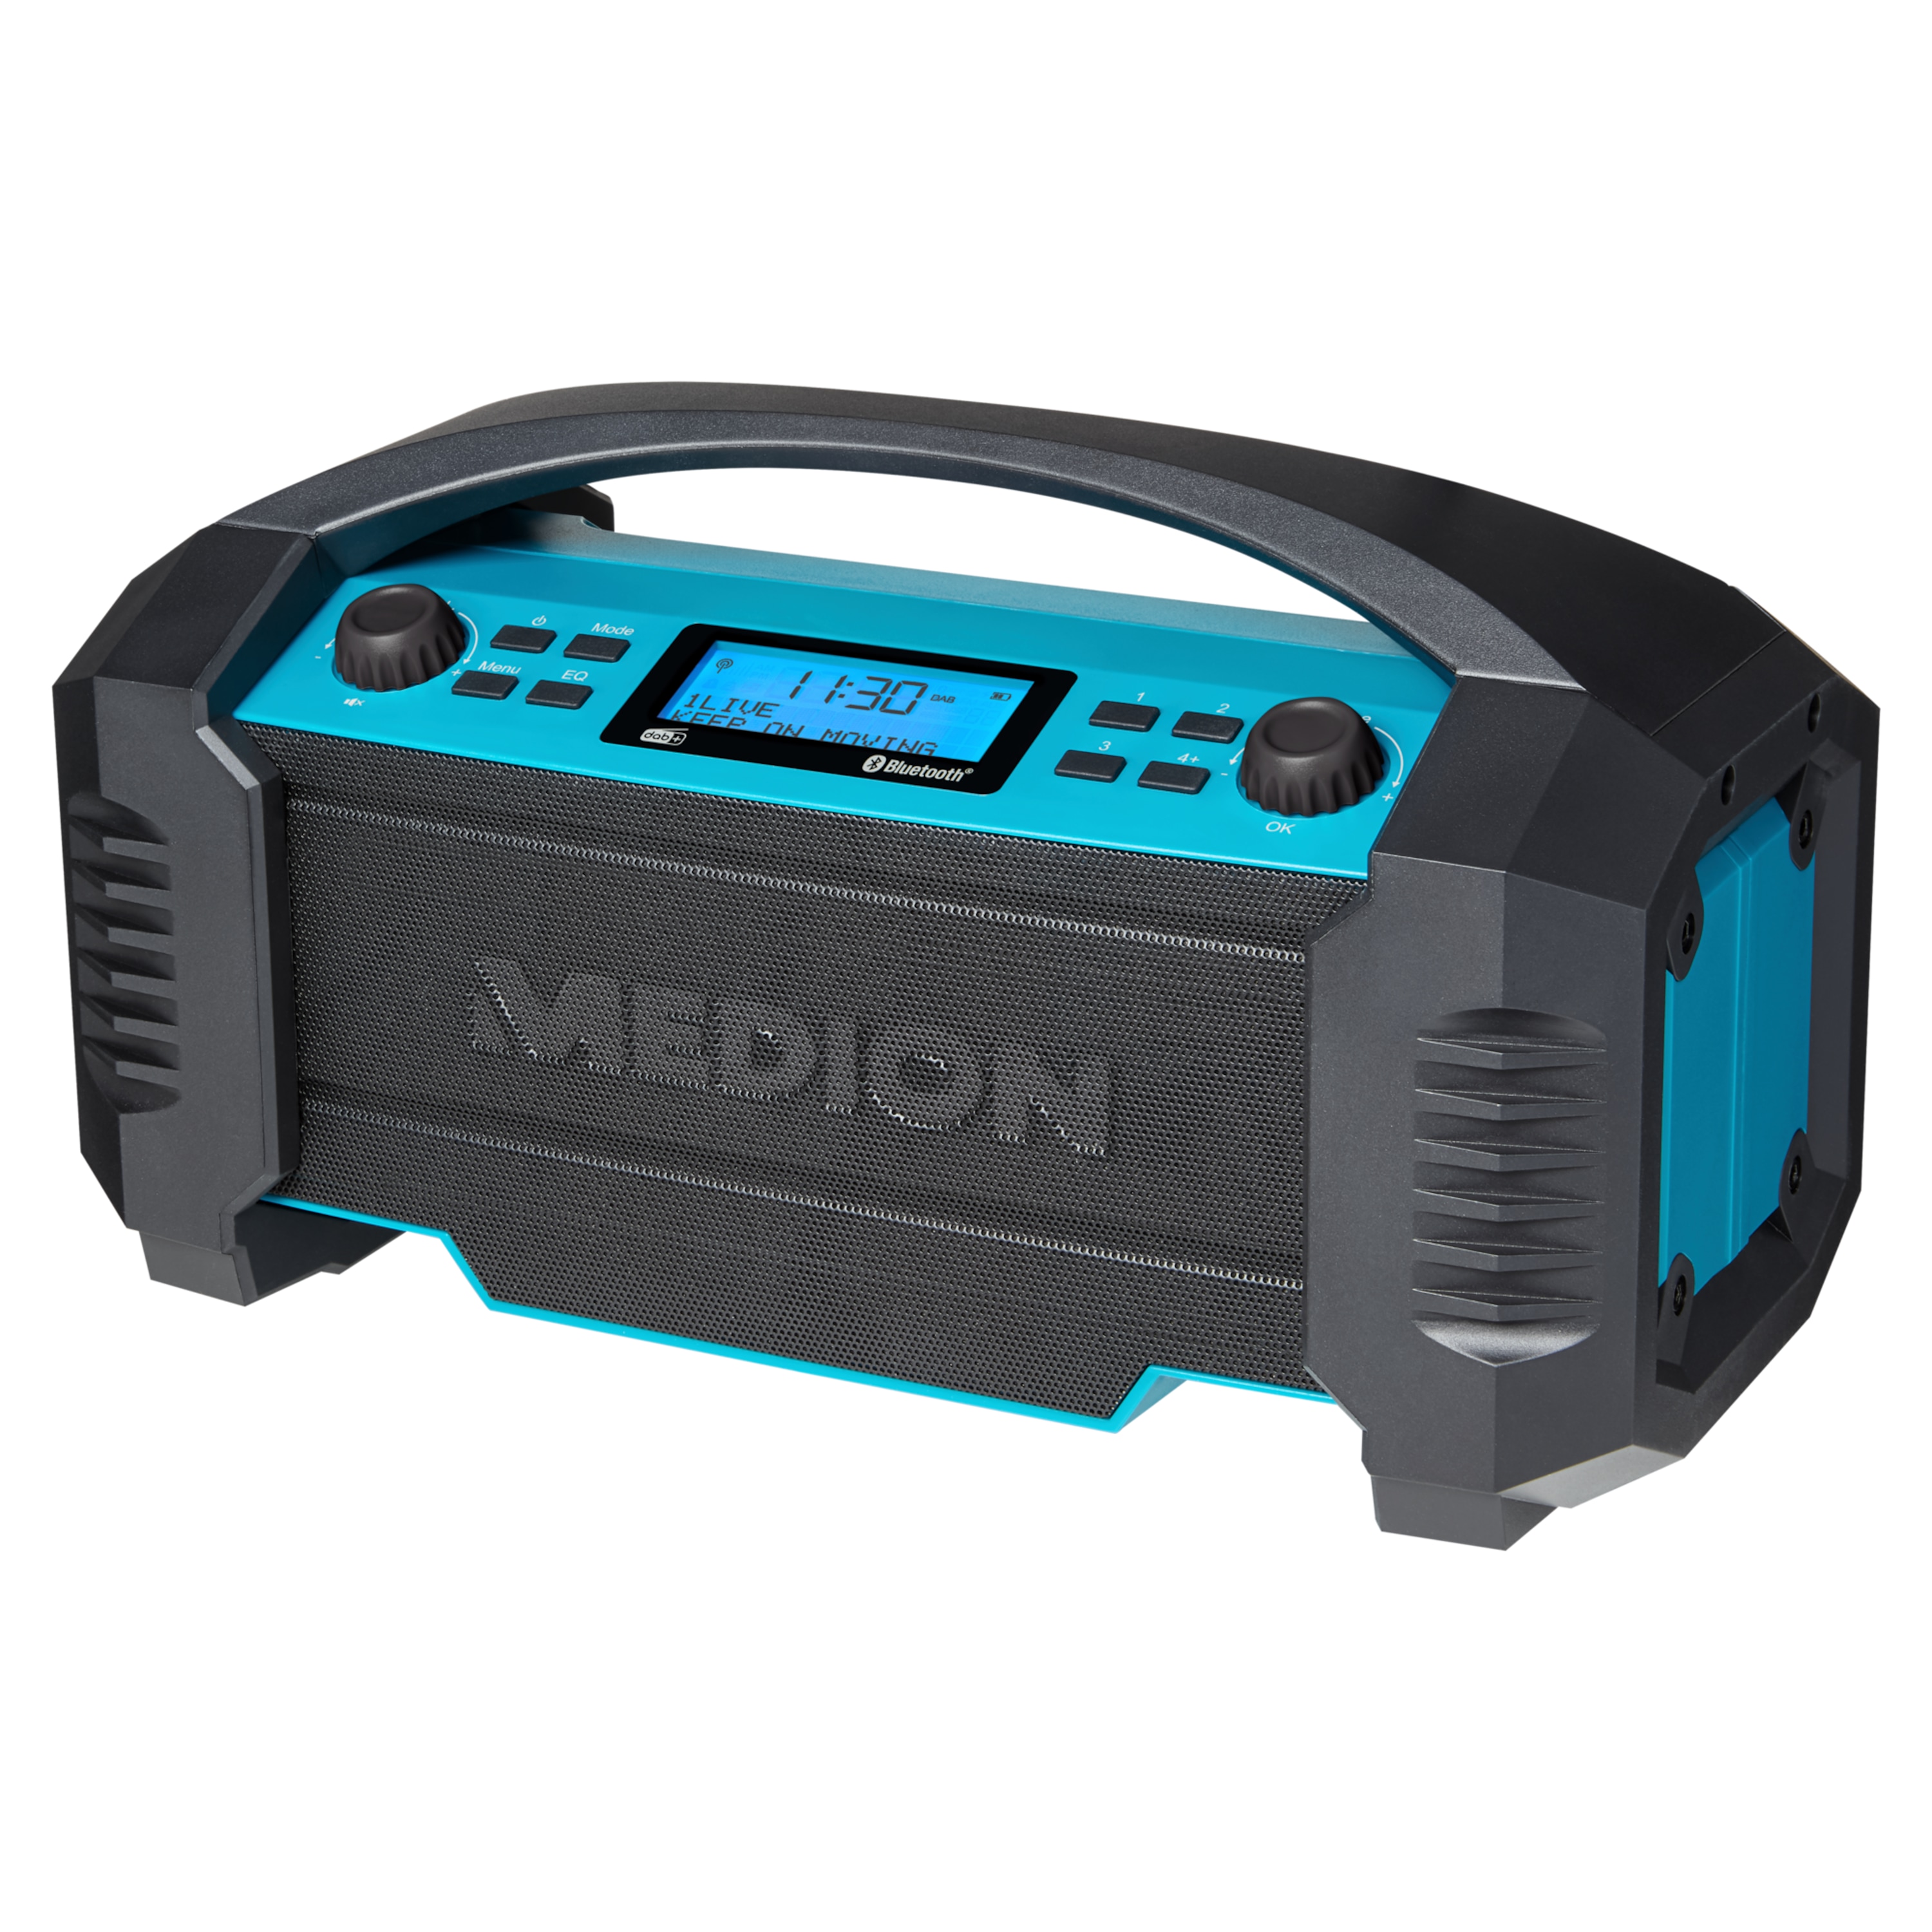 MEDION LIFE® E66050 DAB+/Bluetooth®-Baustellenradio, ideal für Baustellen, Garten oder Camping, IP54 Schutz gegen Spritzwasser & Staub, 7 Soundeinstellungen, integr. Akku, 15 W RMS